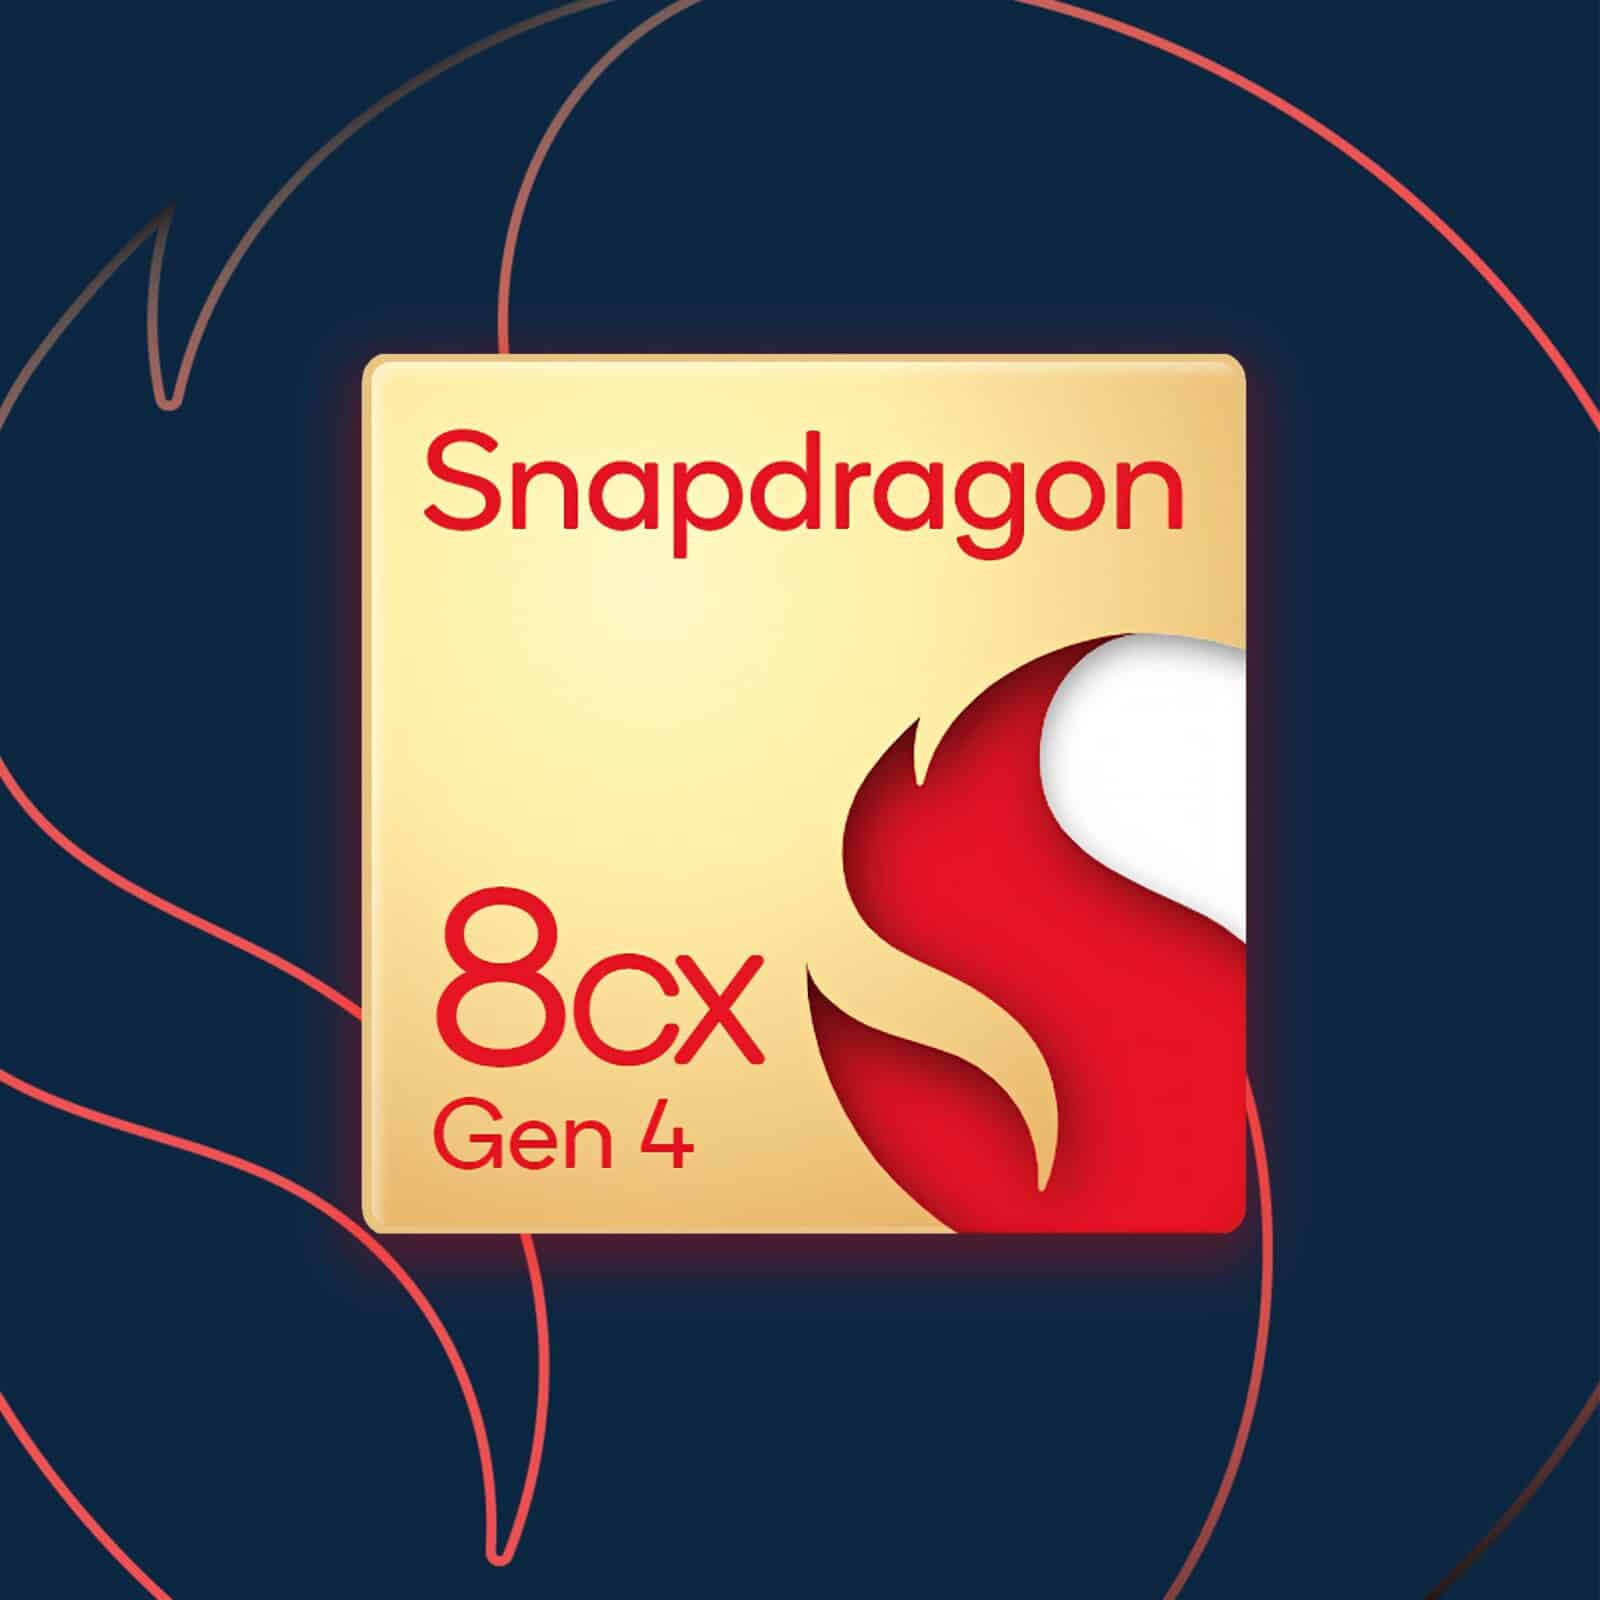 Qualcommの次期PC向けチップ「Snapdragon 8cx Gen 4」は、まさに“Appleキラー”になる可能性